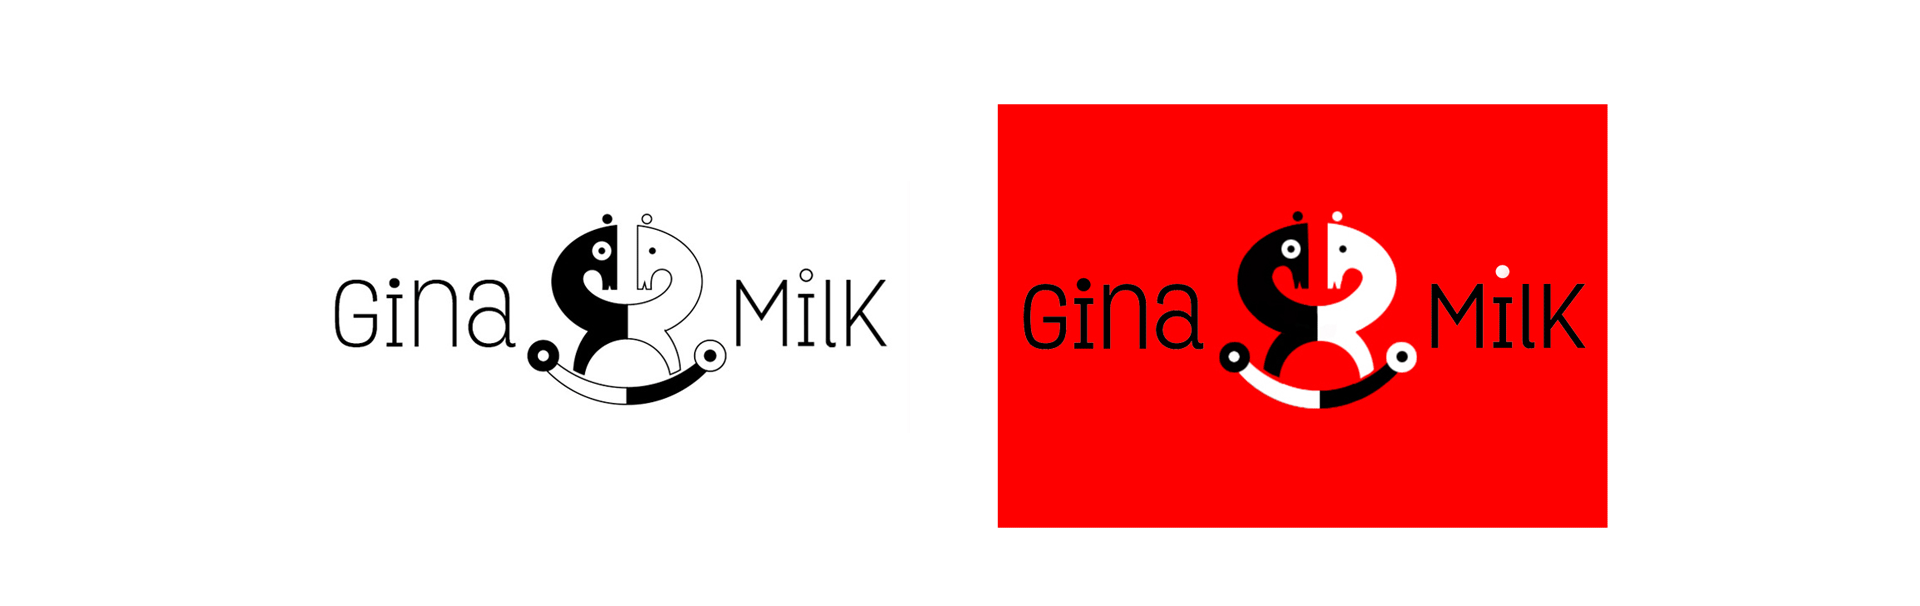 Gina Milk - Logos